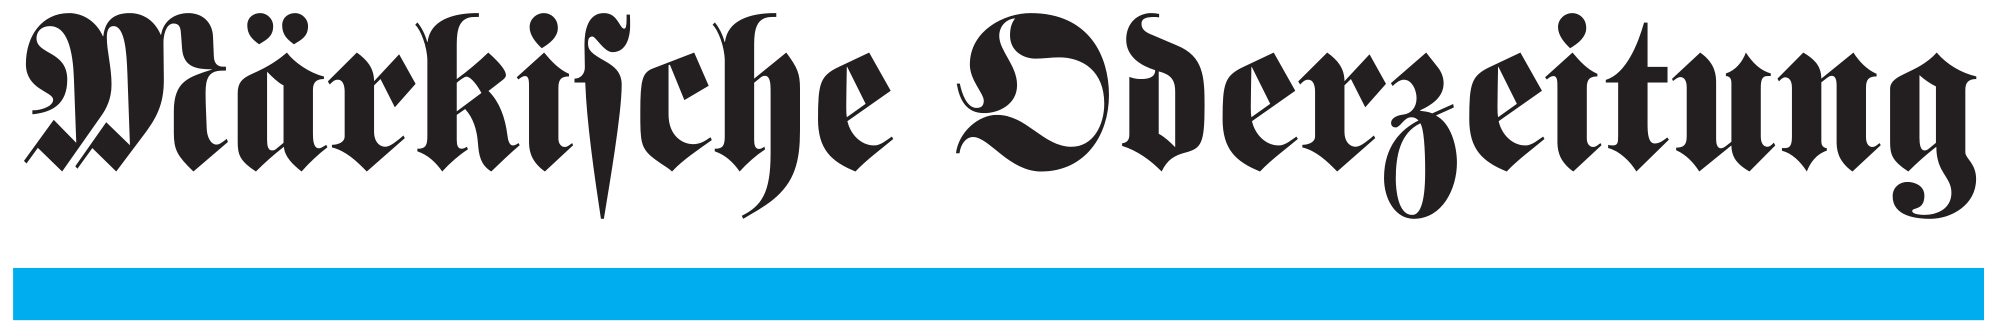 Märkische-Oderzeitung-Logo.svg.png